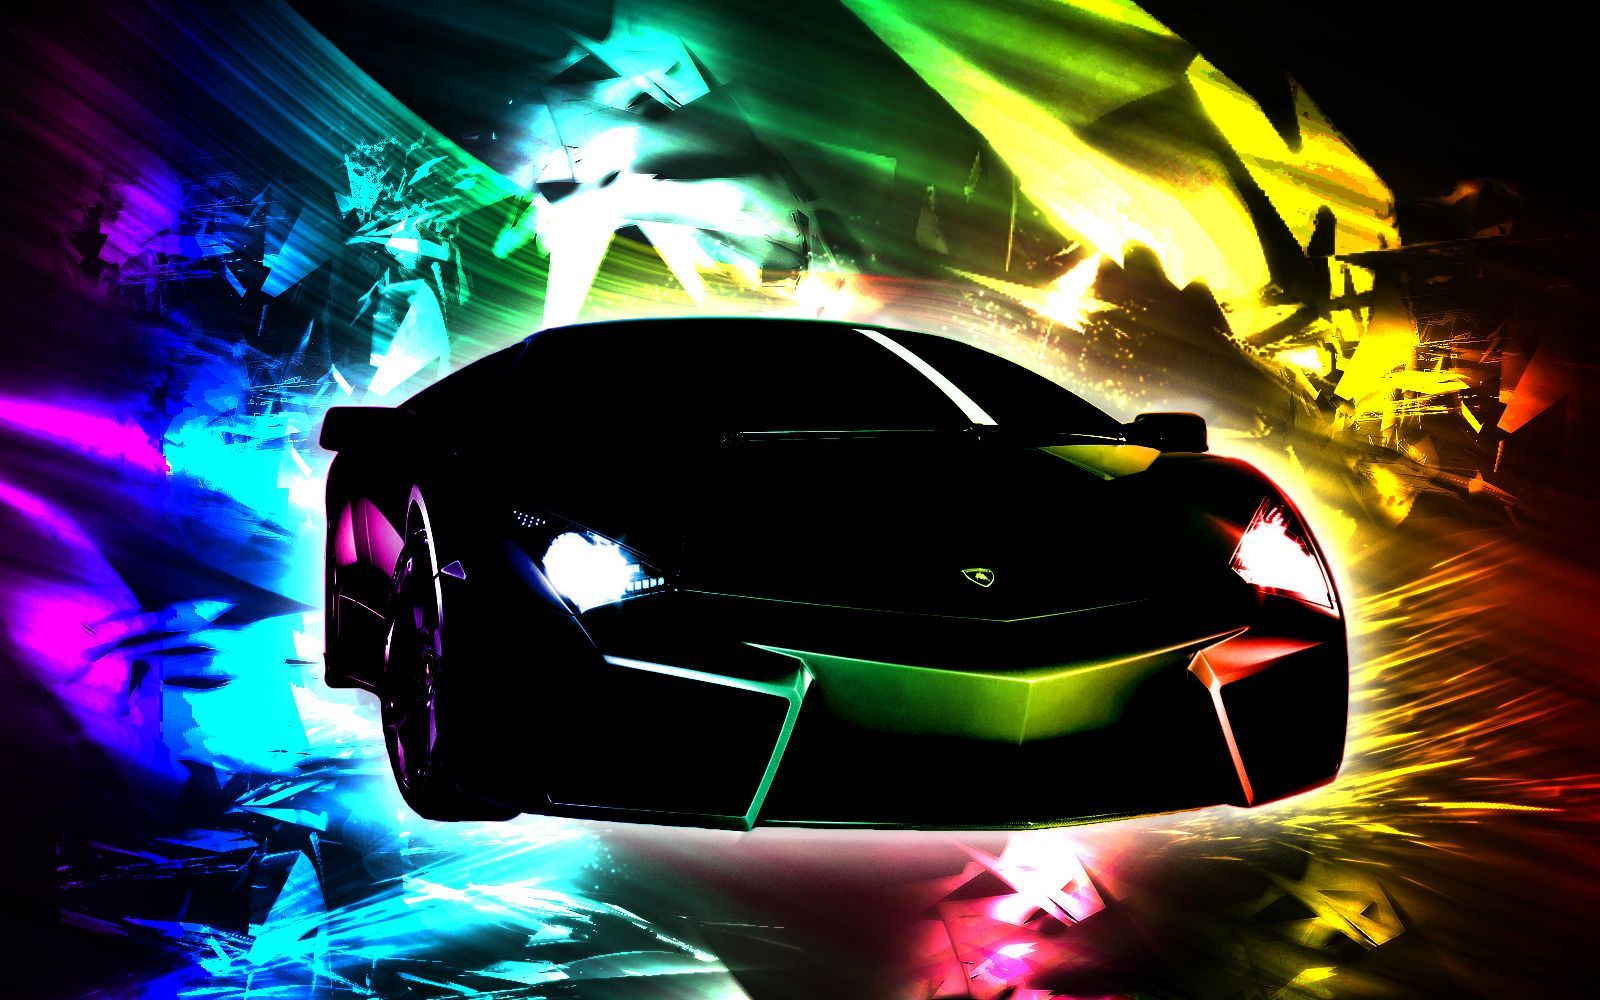 Colorful Lamborghini FREE Picture